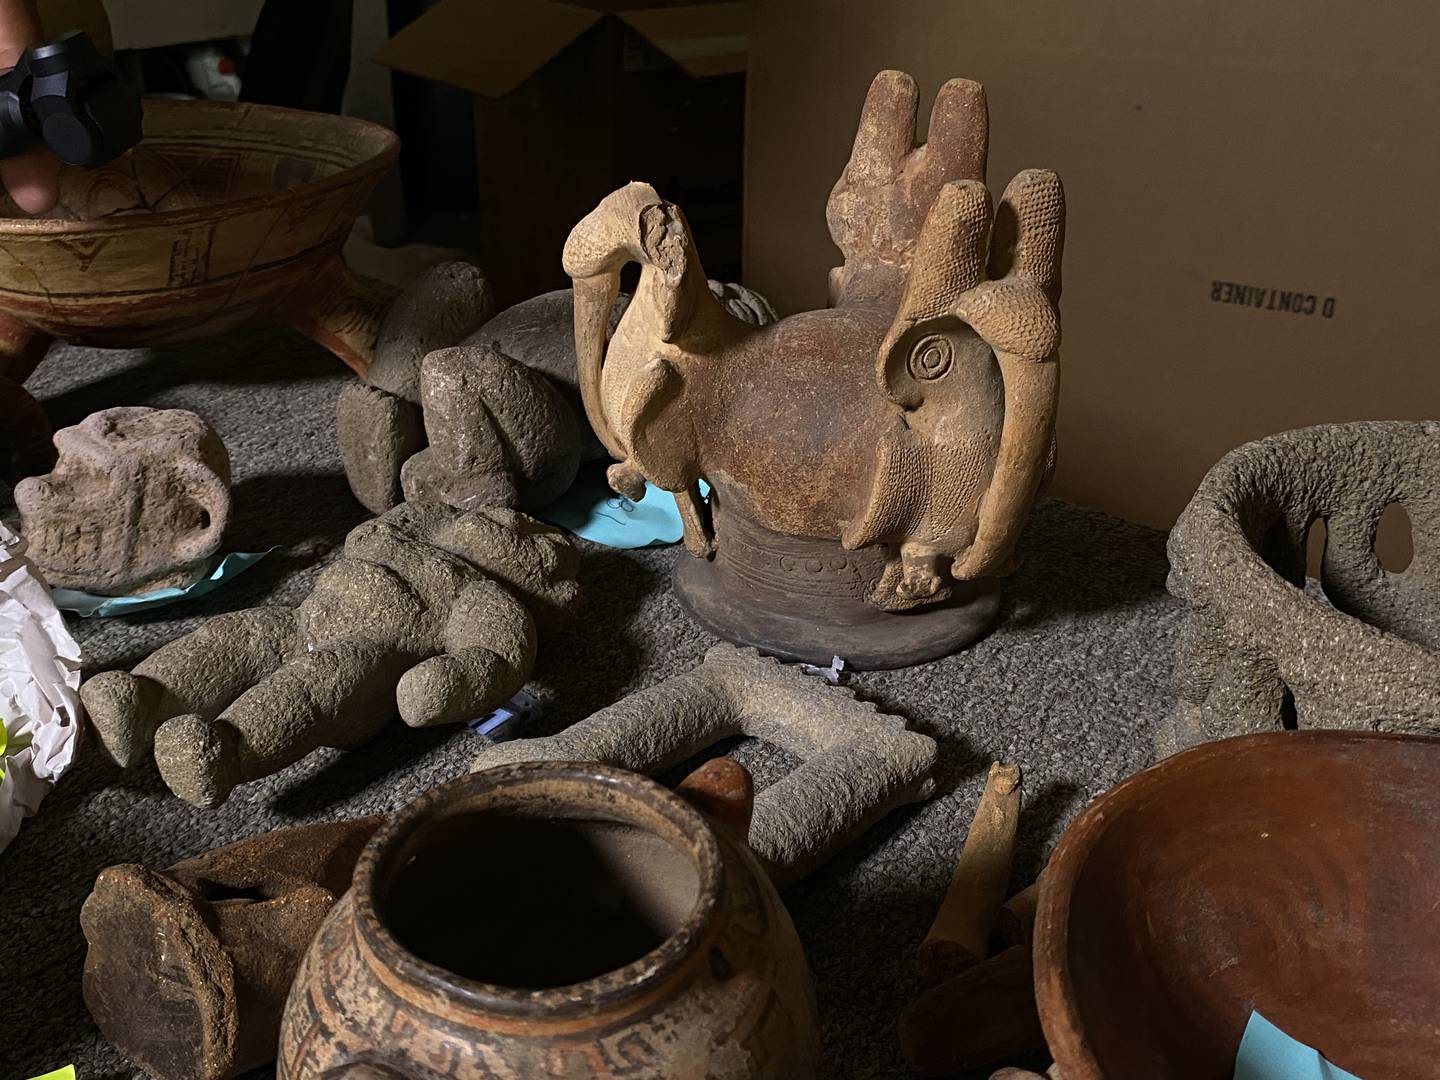 Elaborados en piedra y cerámica, el envío de piezas incluyó metates, piedras verdes (jade), vasijas policromas, figuras humanas y de animales y herramientas en piedra. Fotografía: Cortesía.